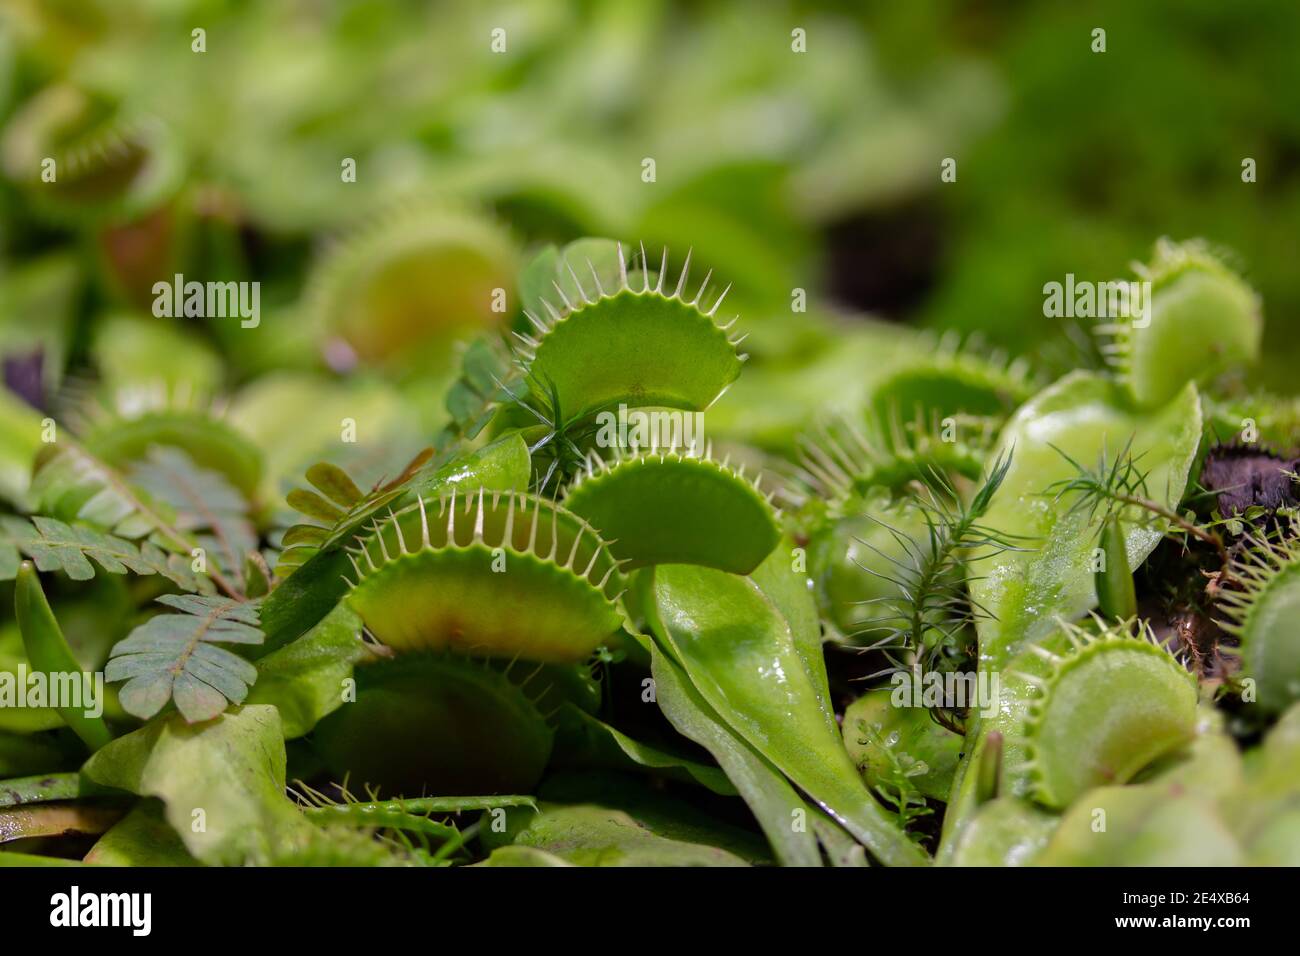 Venusfliegenfalle oder Dionaea muscipula, eine fleischfressende Pflanze aus der monotypischen Gattung Dionaeus der Familie Droseracea. Naturfotografie Stockfoto